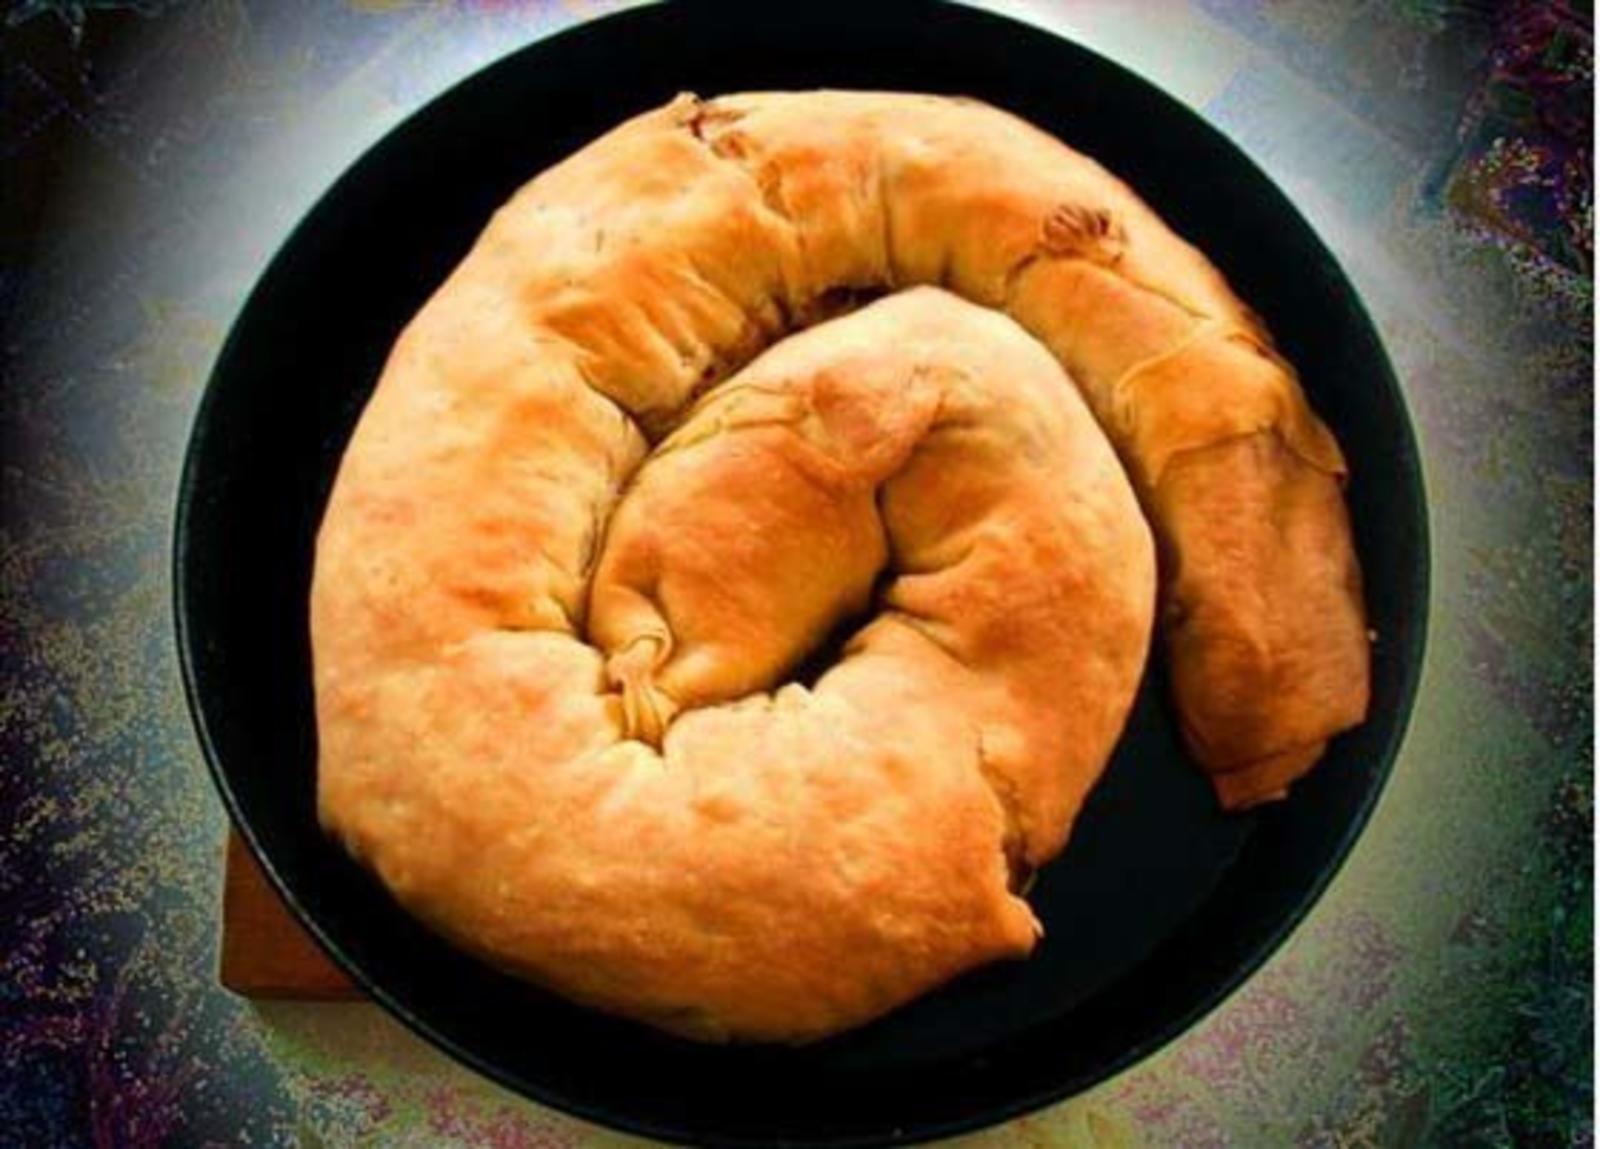 Тыквенный хлеб -пошаговый рецепт с фото